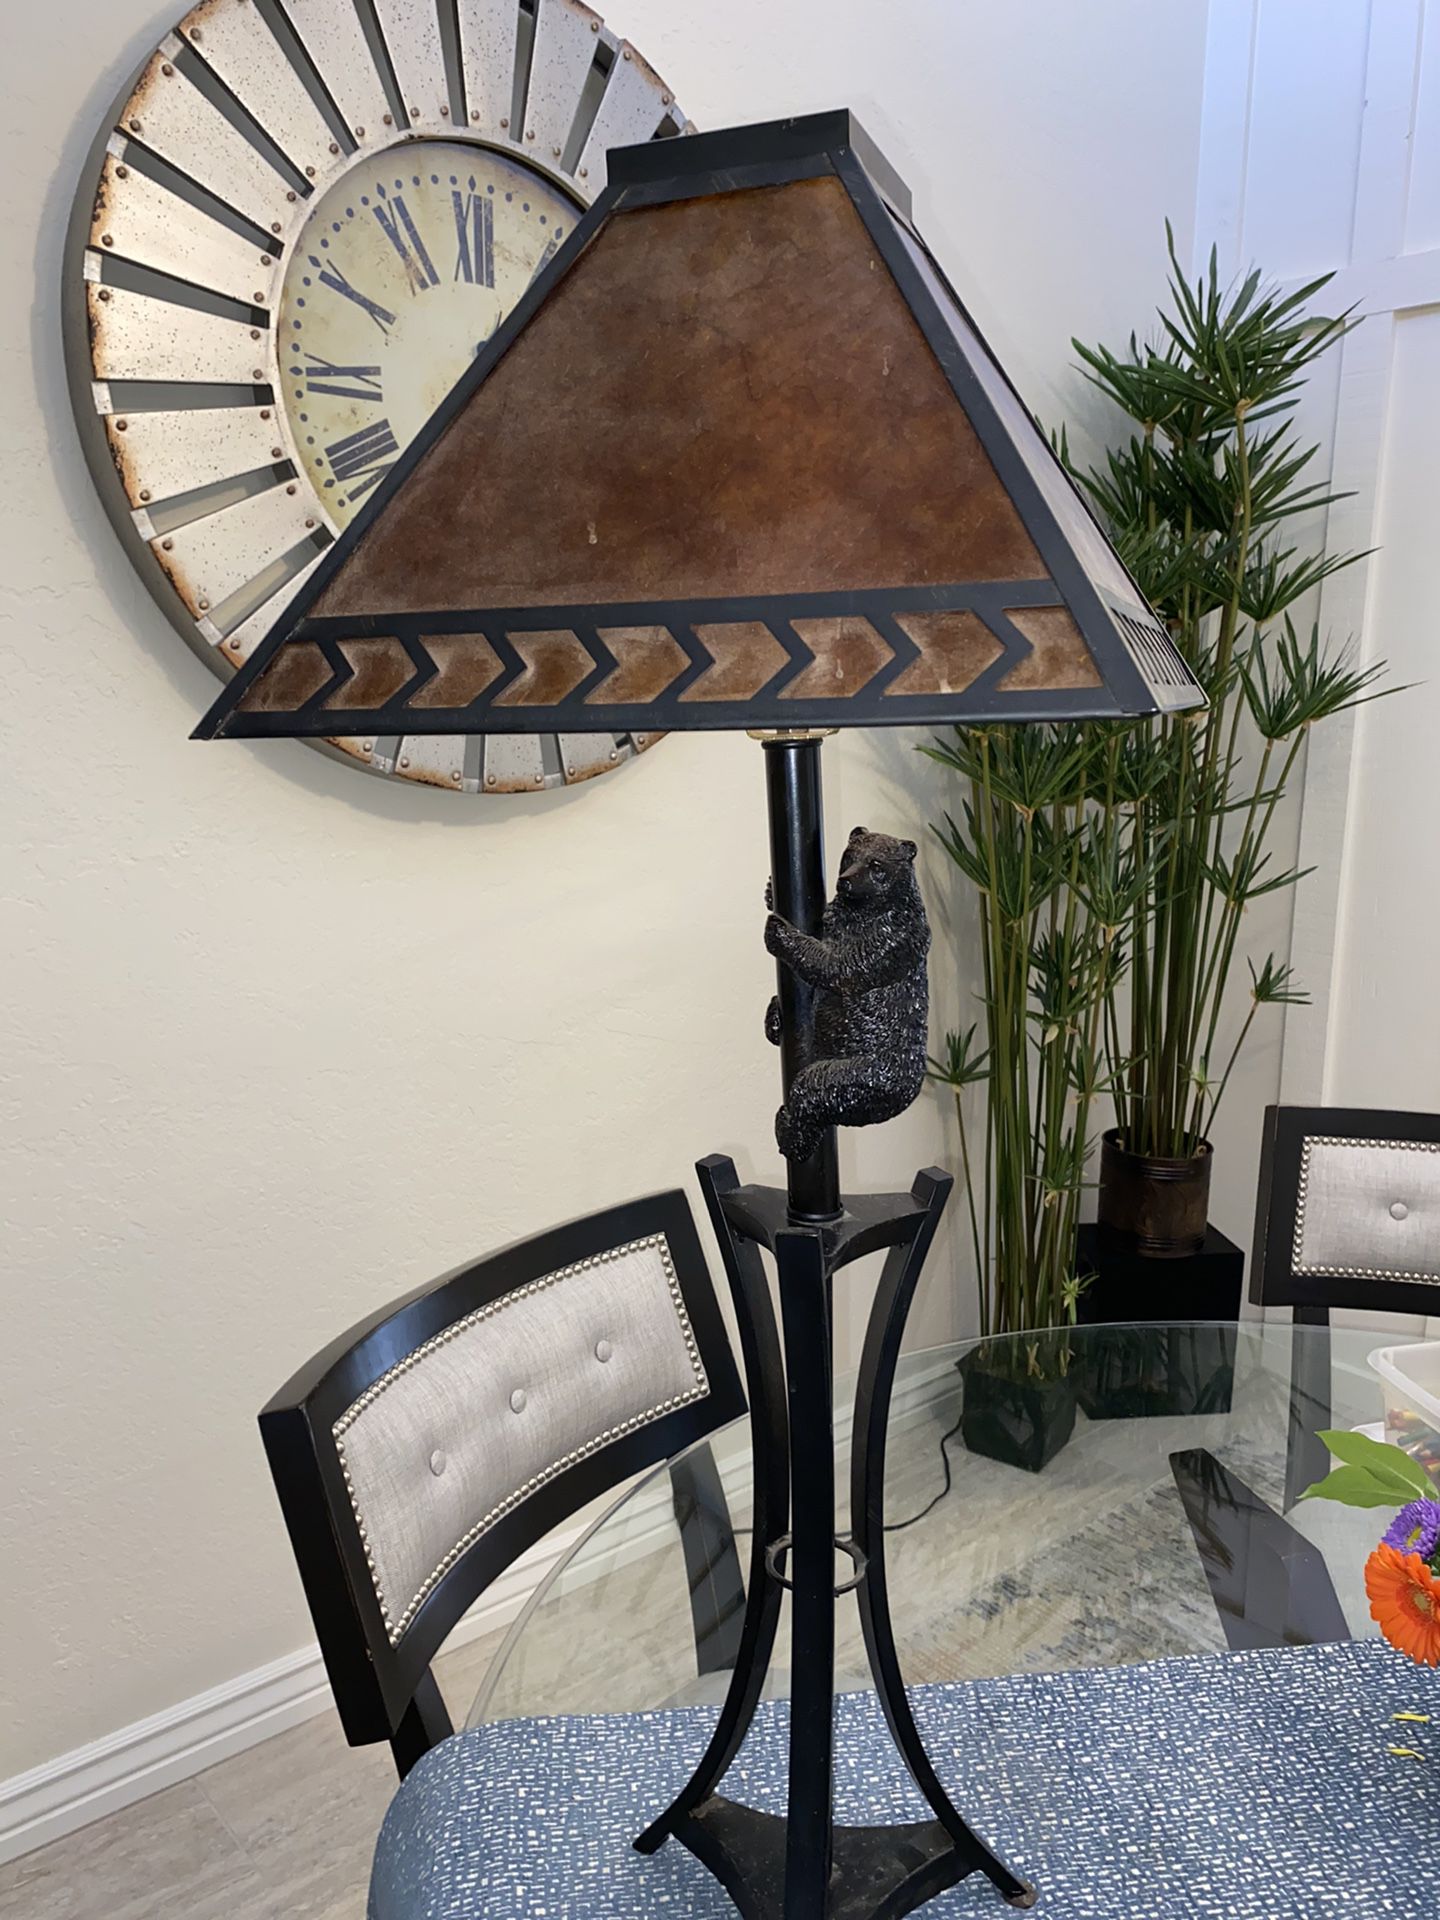 Rustic table lamp